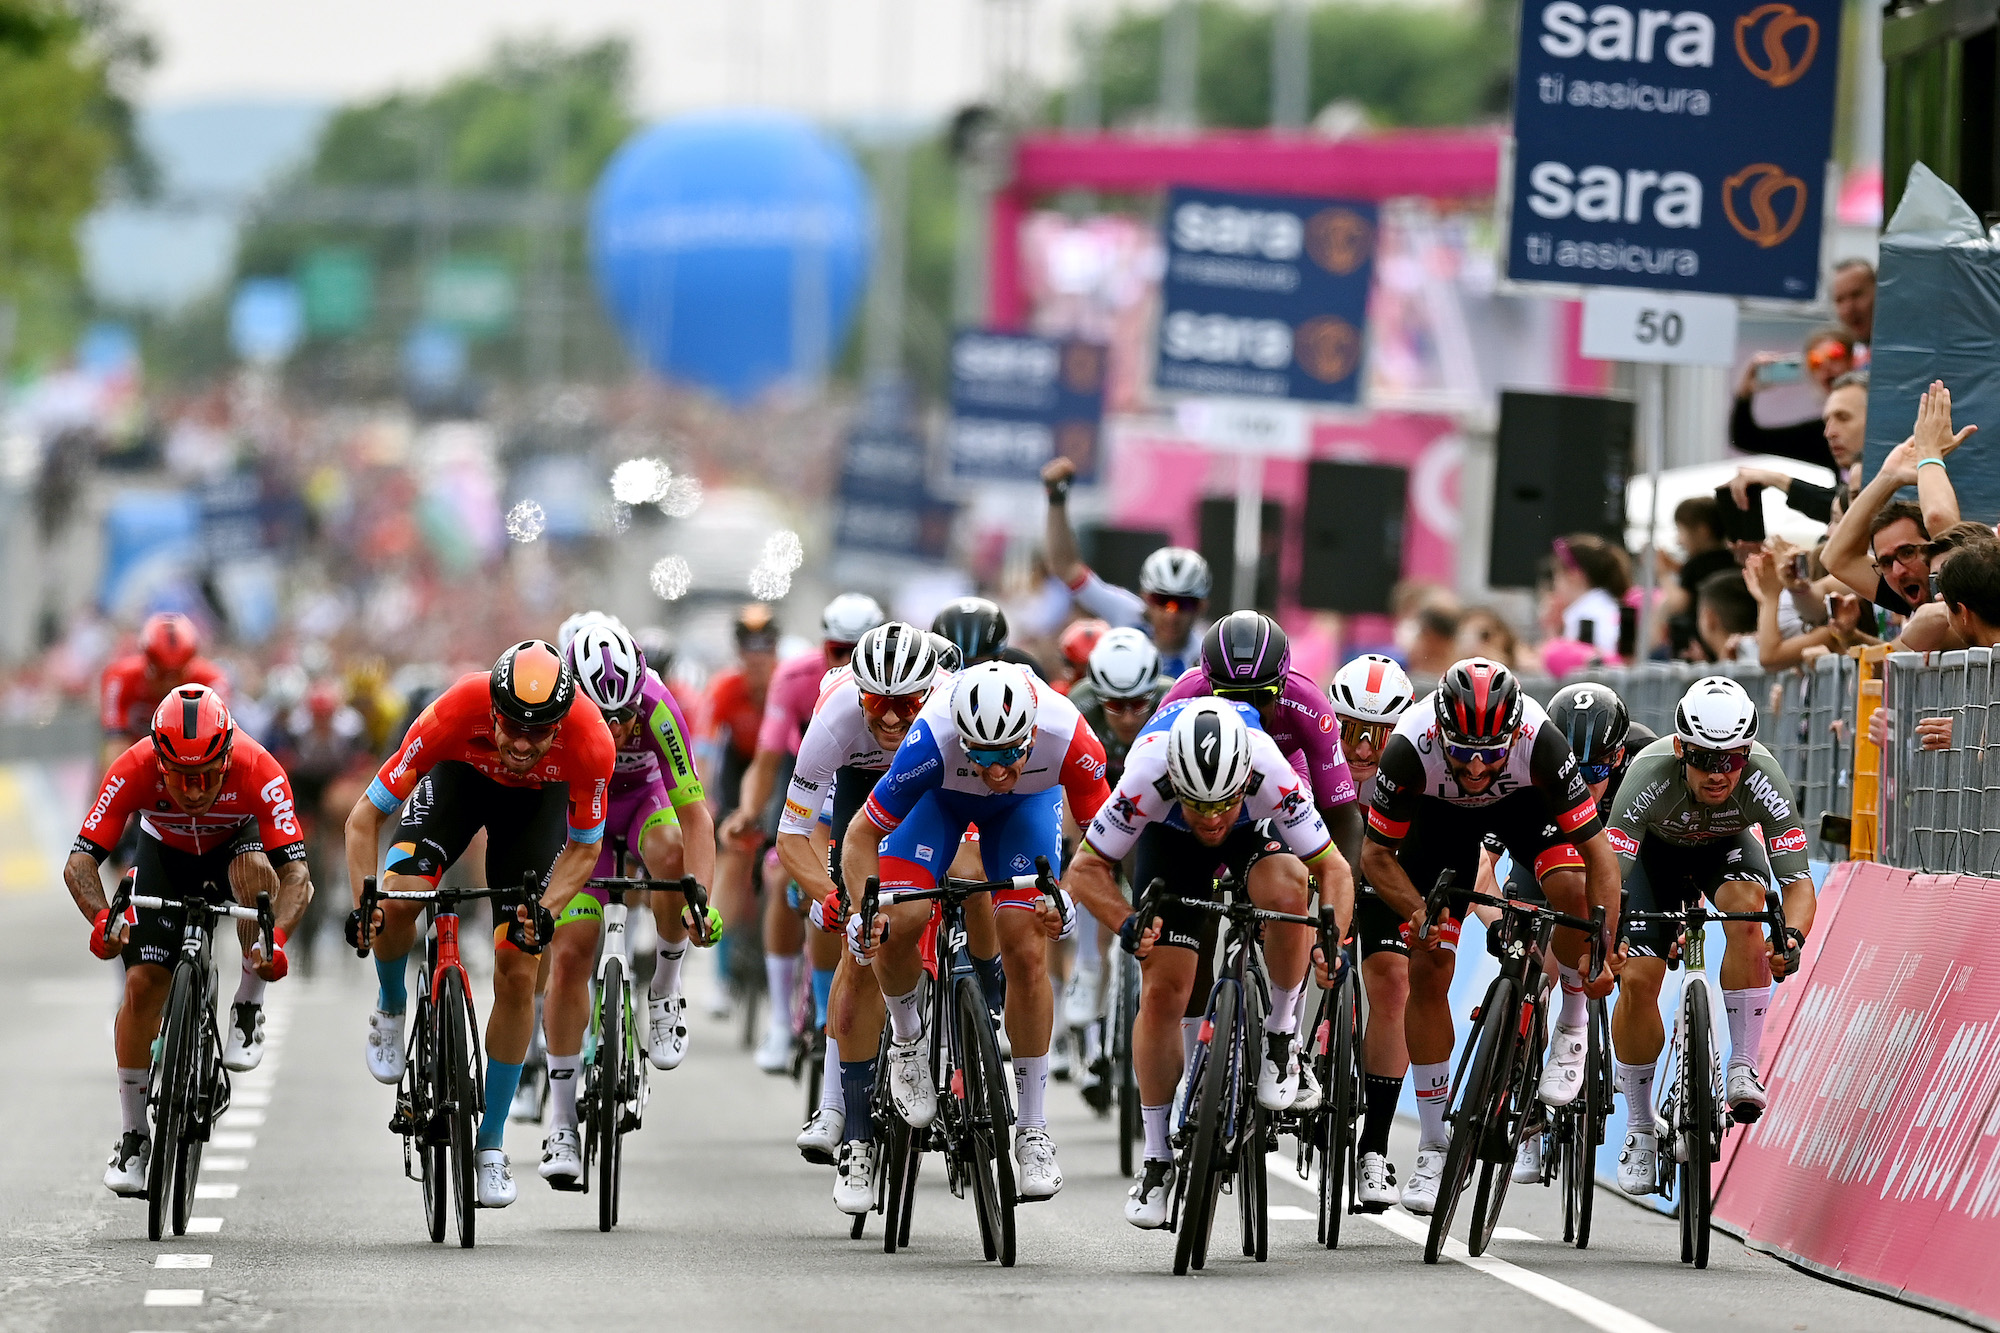 How to watch Giro d'Italia 2022 Live stream the Italian Grand Tour